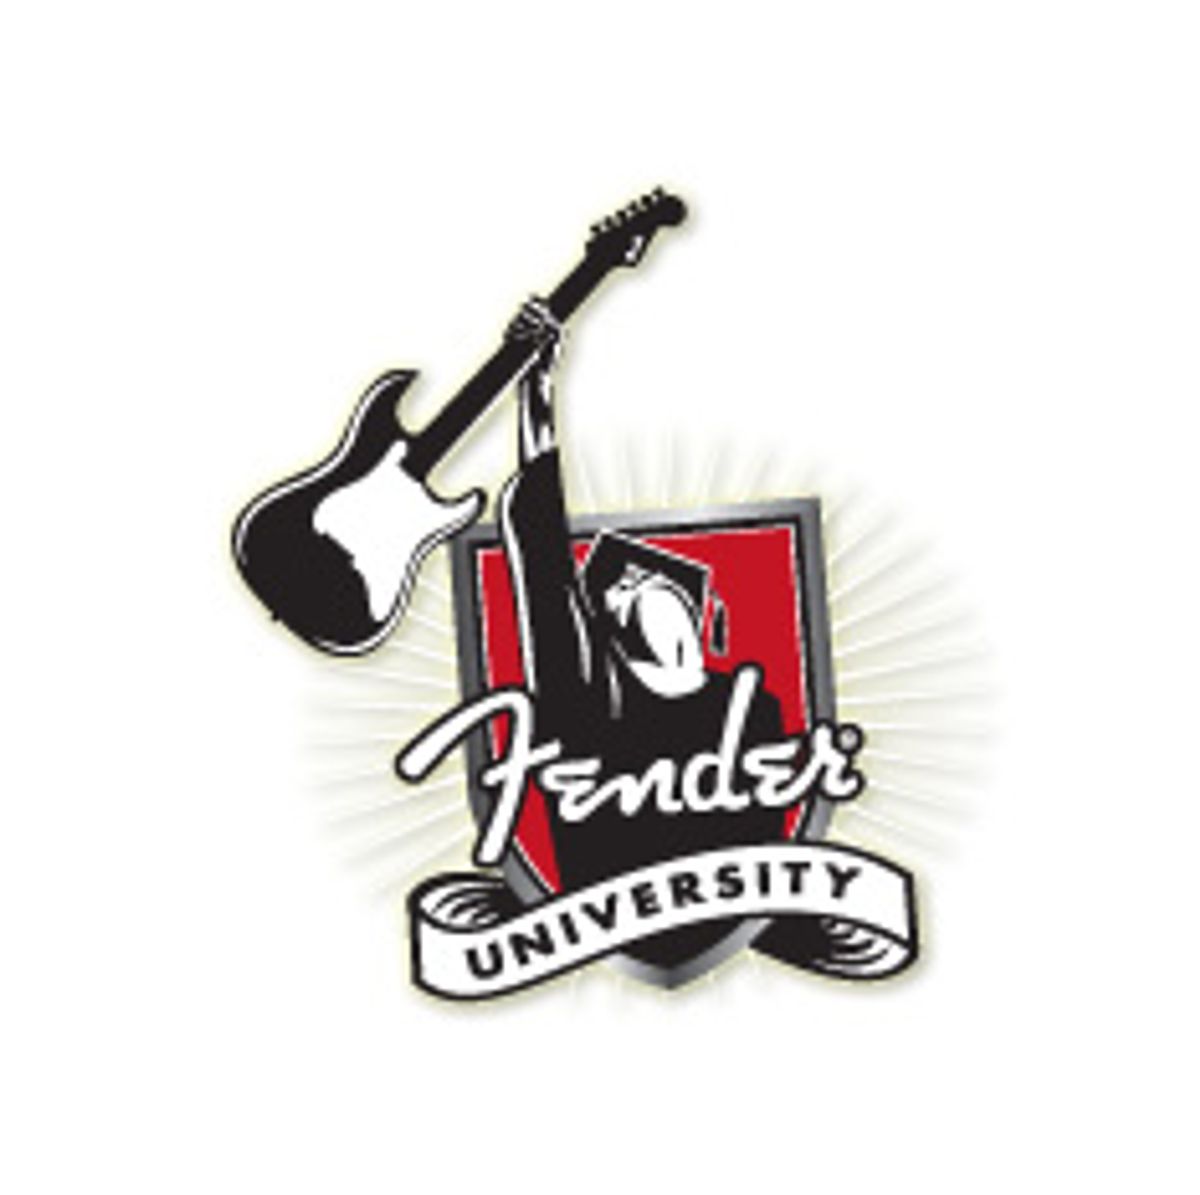 Fender University Announces Guest Faculty